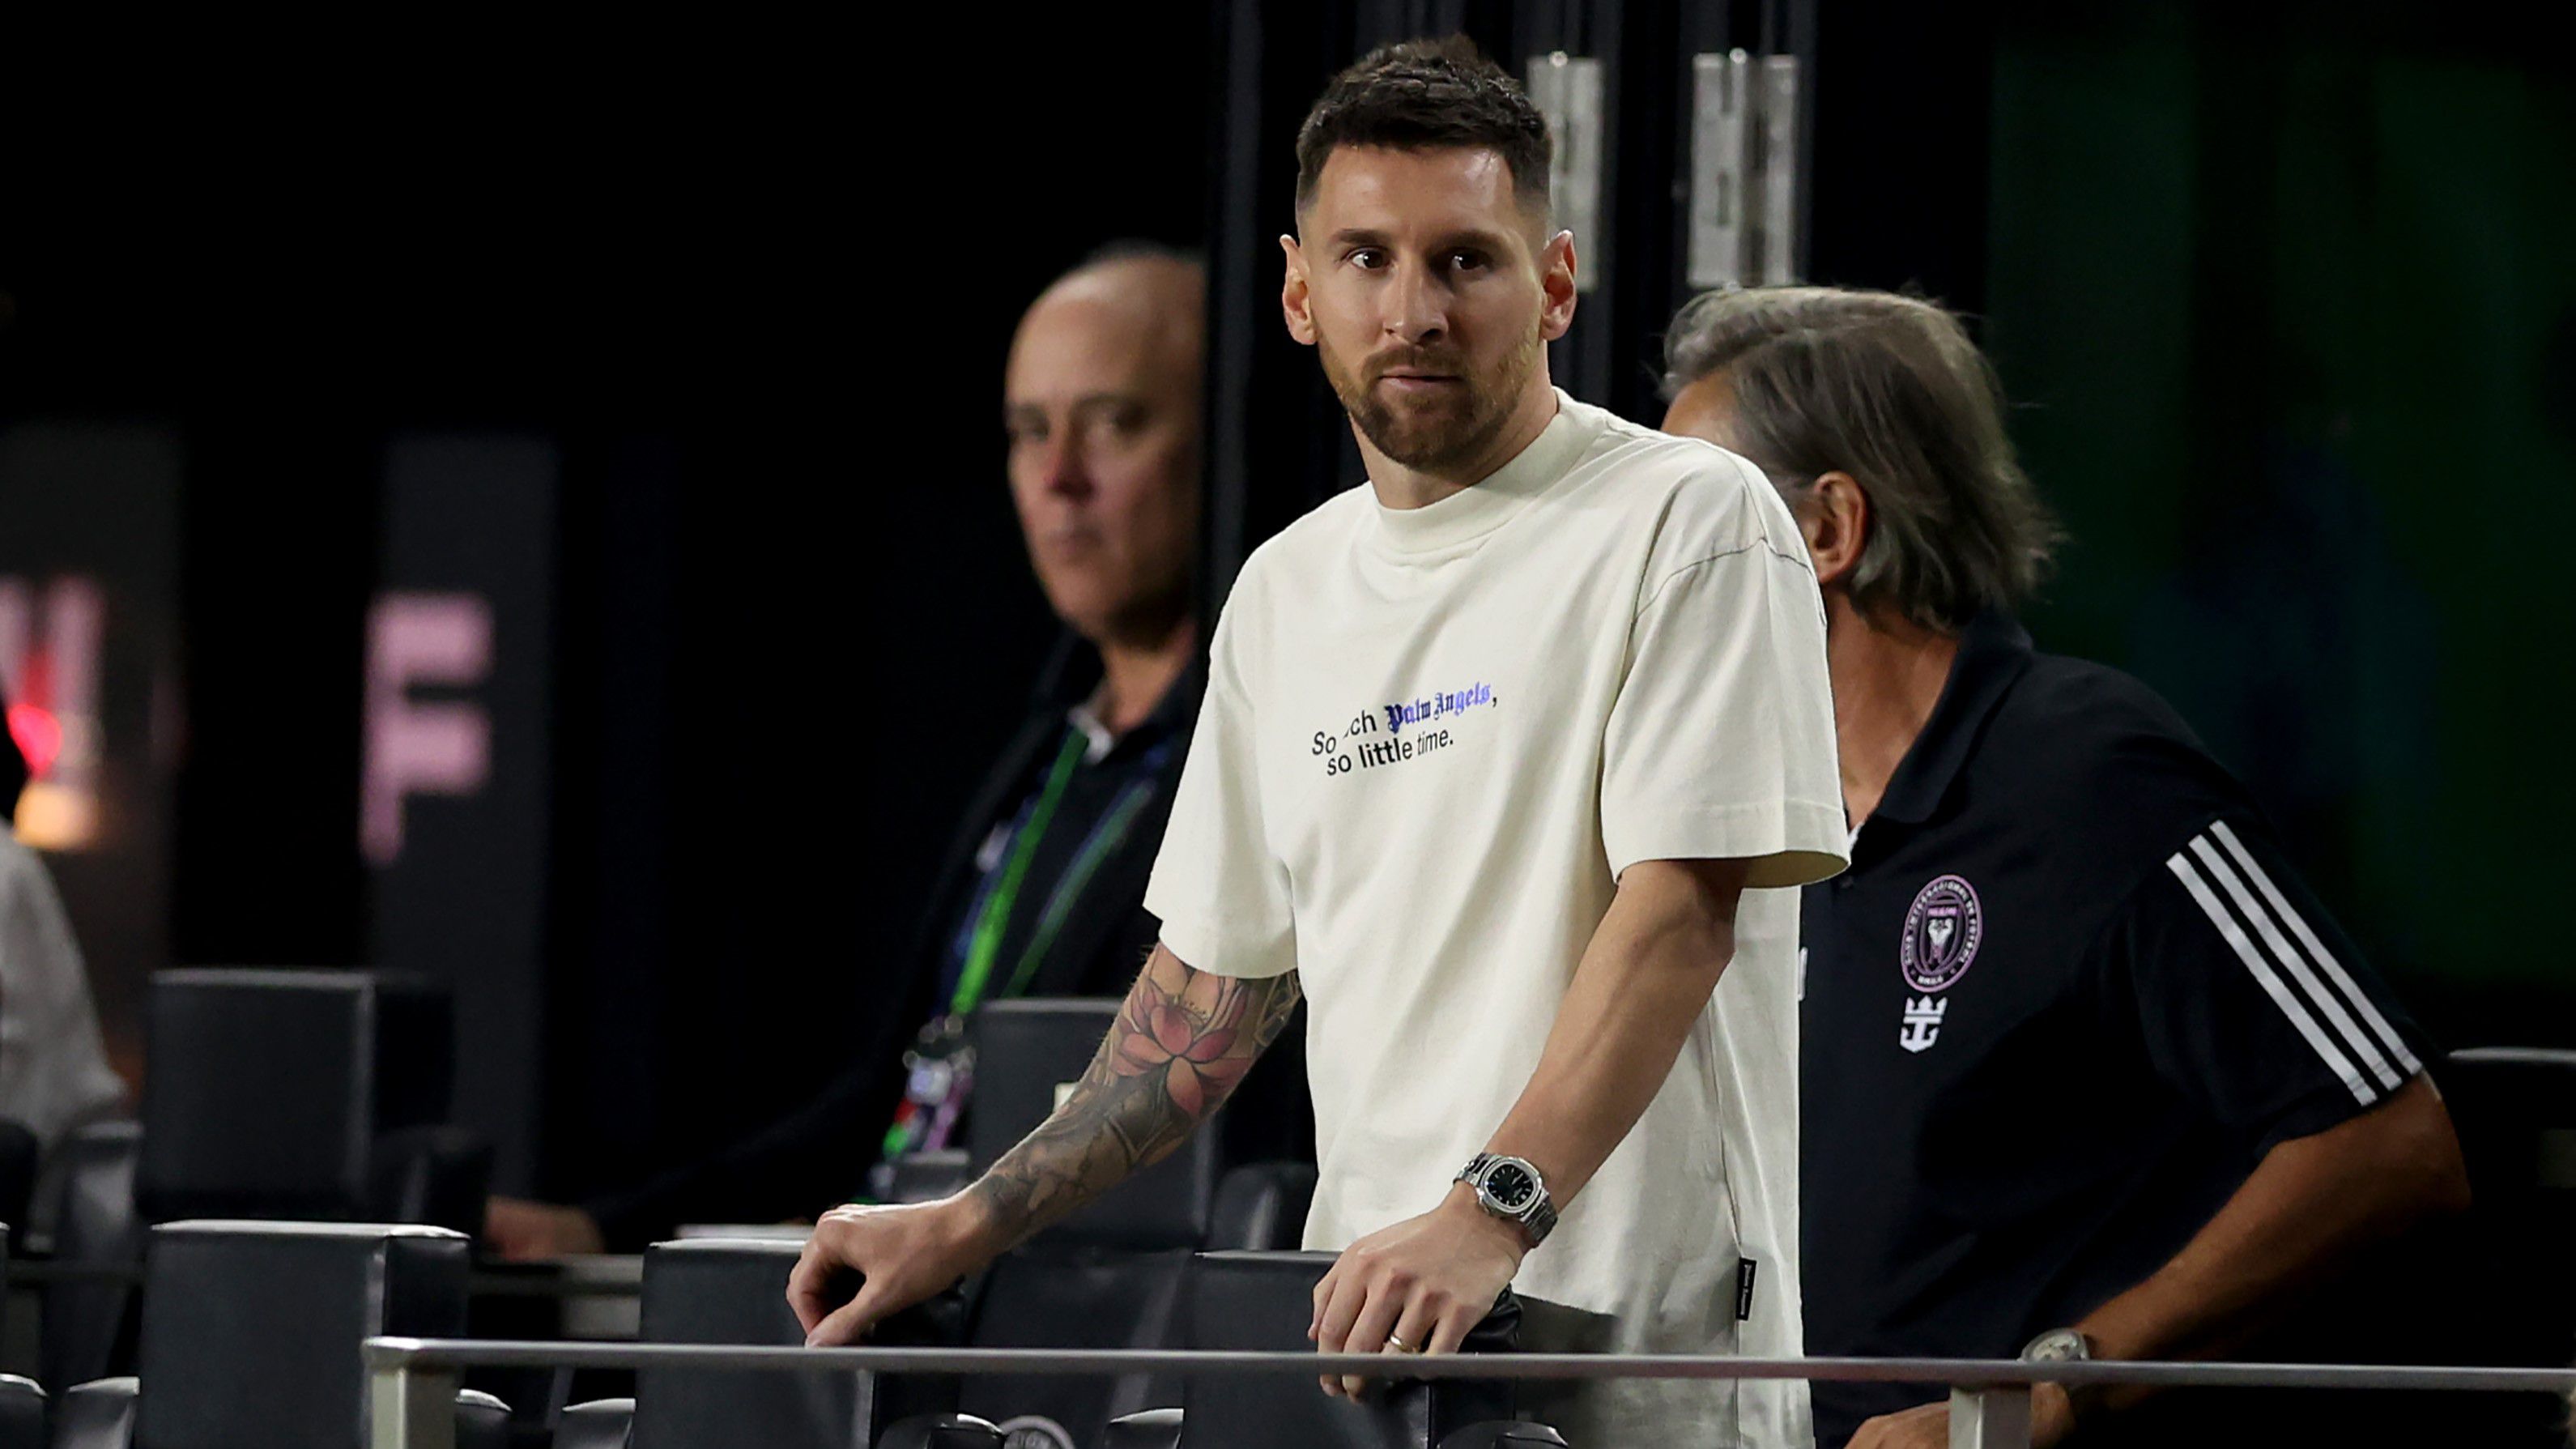 Undorító jelzőkkel illette Messit az ellenfél segédedzője